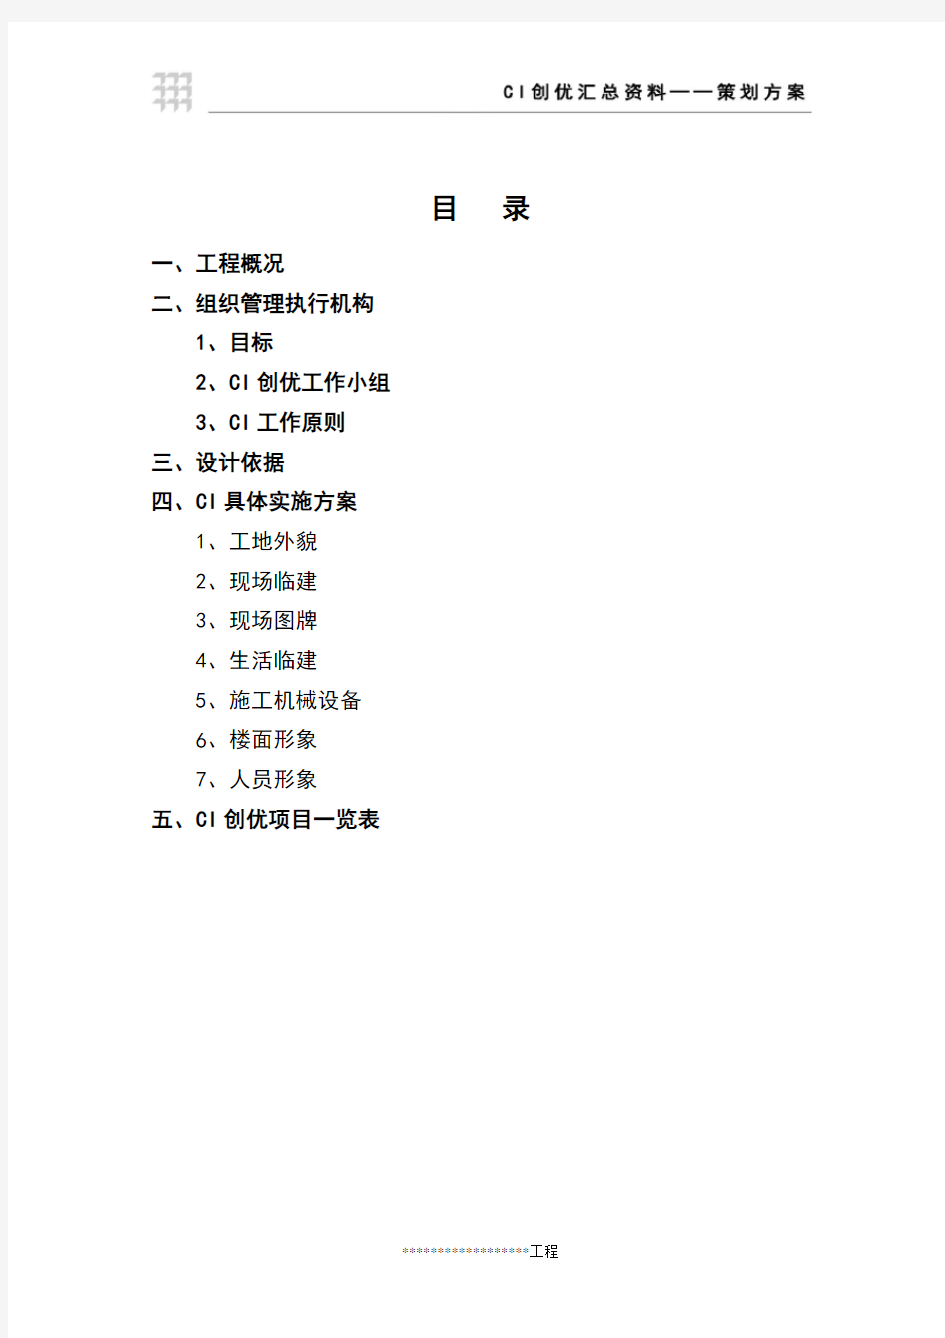 2013年中国建筑一局集团CI策划方案(模板)